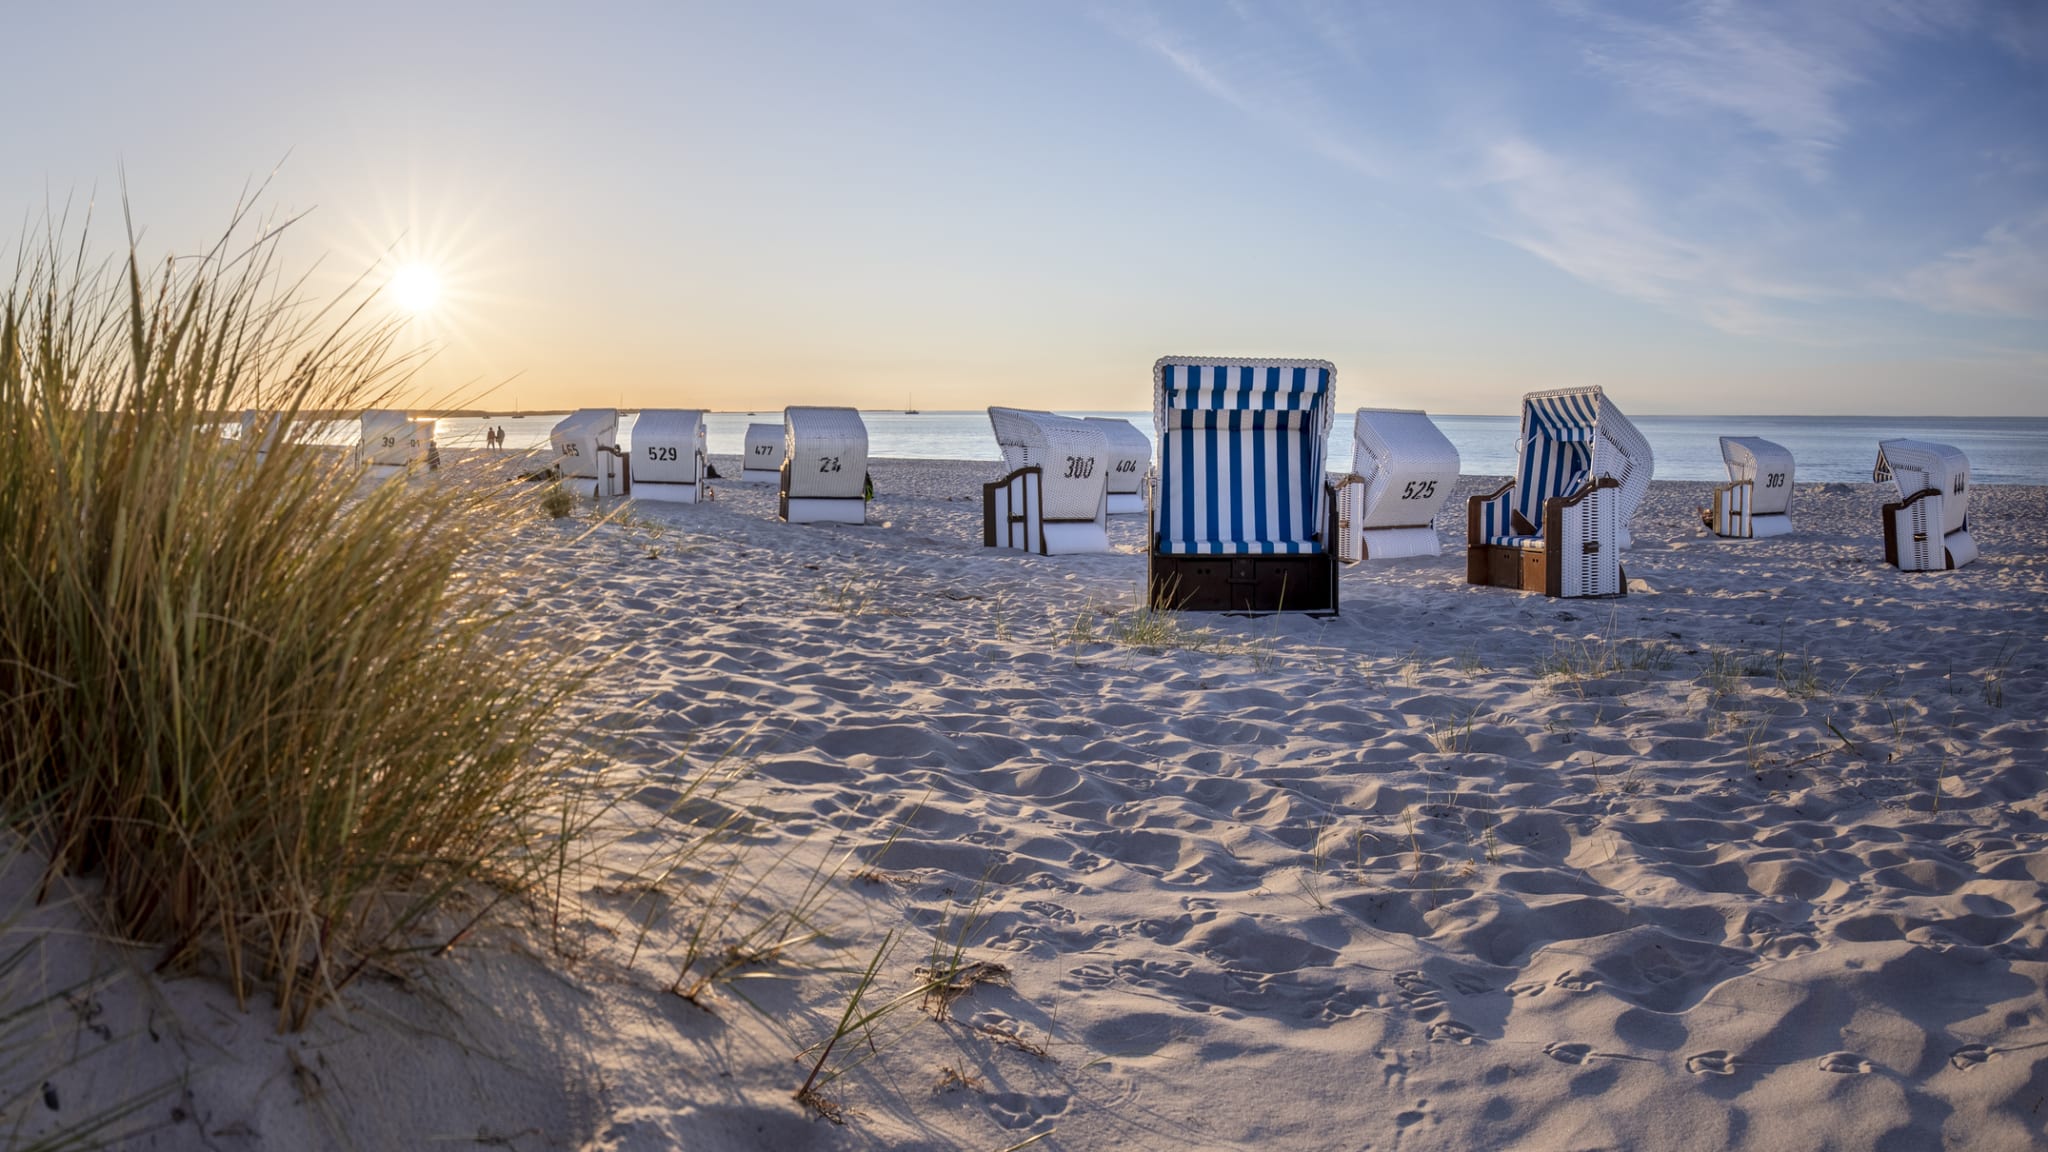 Strandkörbe an einem Strand bei Prerow, Mecklenburg-Vorpommern, Deutschland. © tane-mahuta/iStock / Getty Images Plus via Getty Images